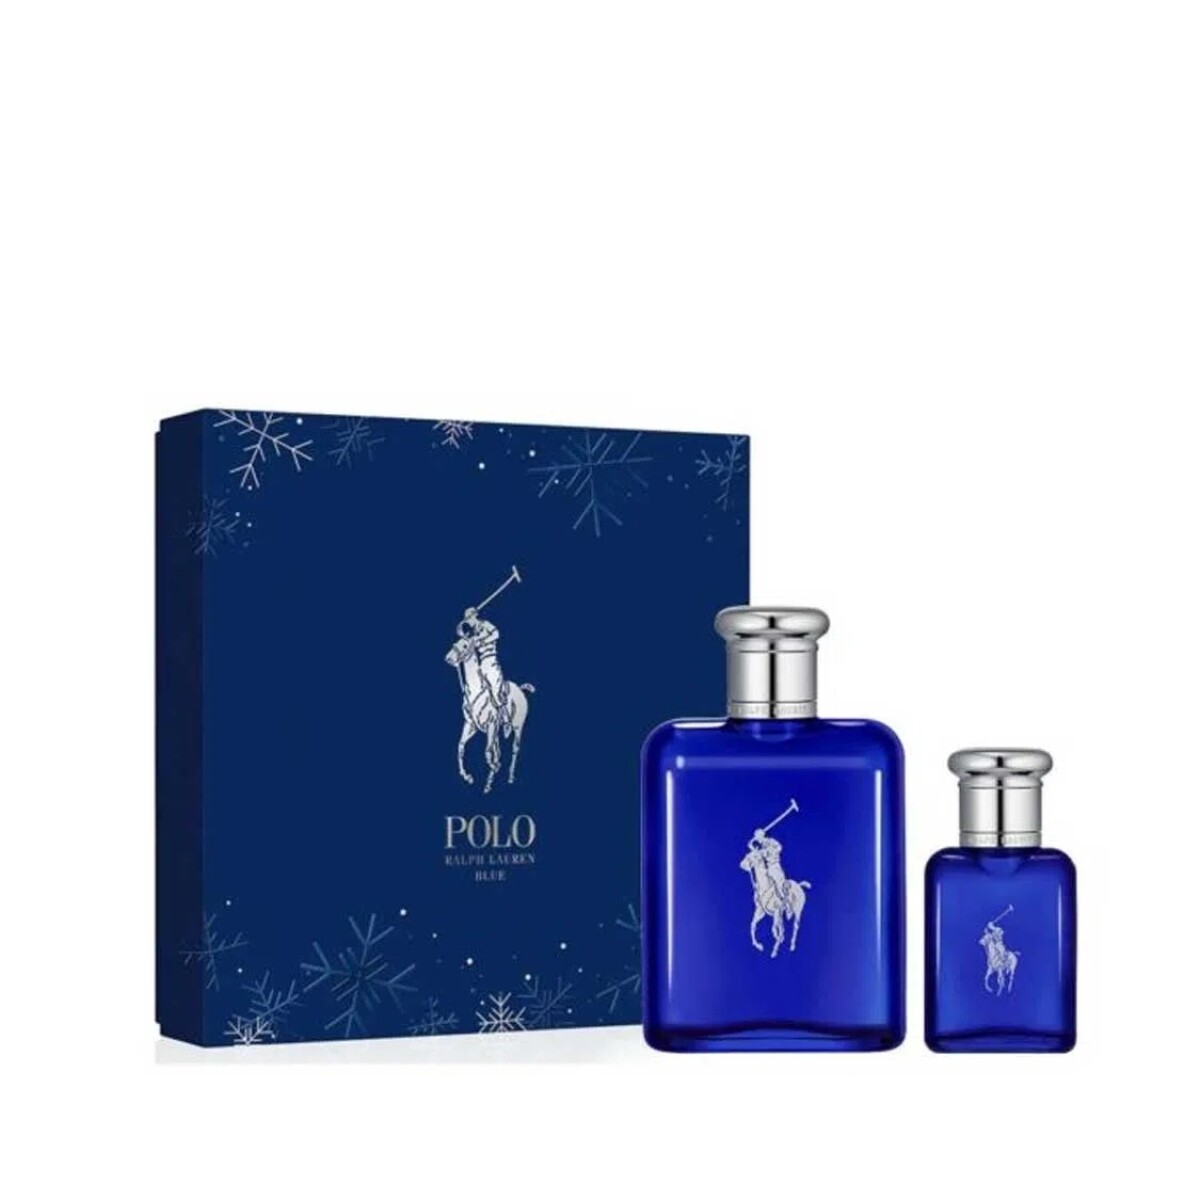 Perfume Polo Blue Edt 125ml + Edt 40ml 